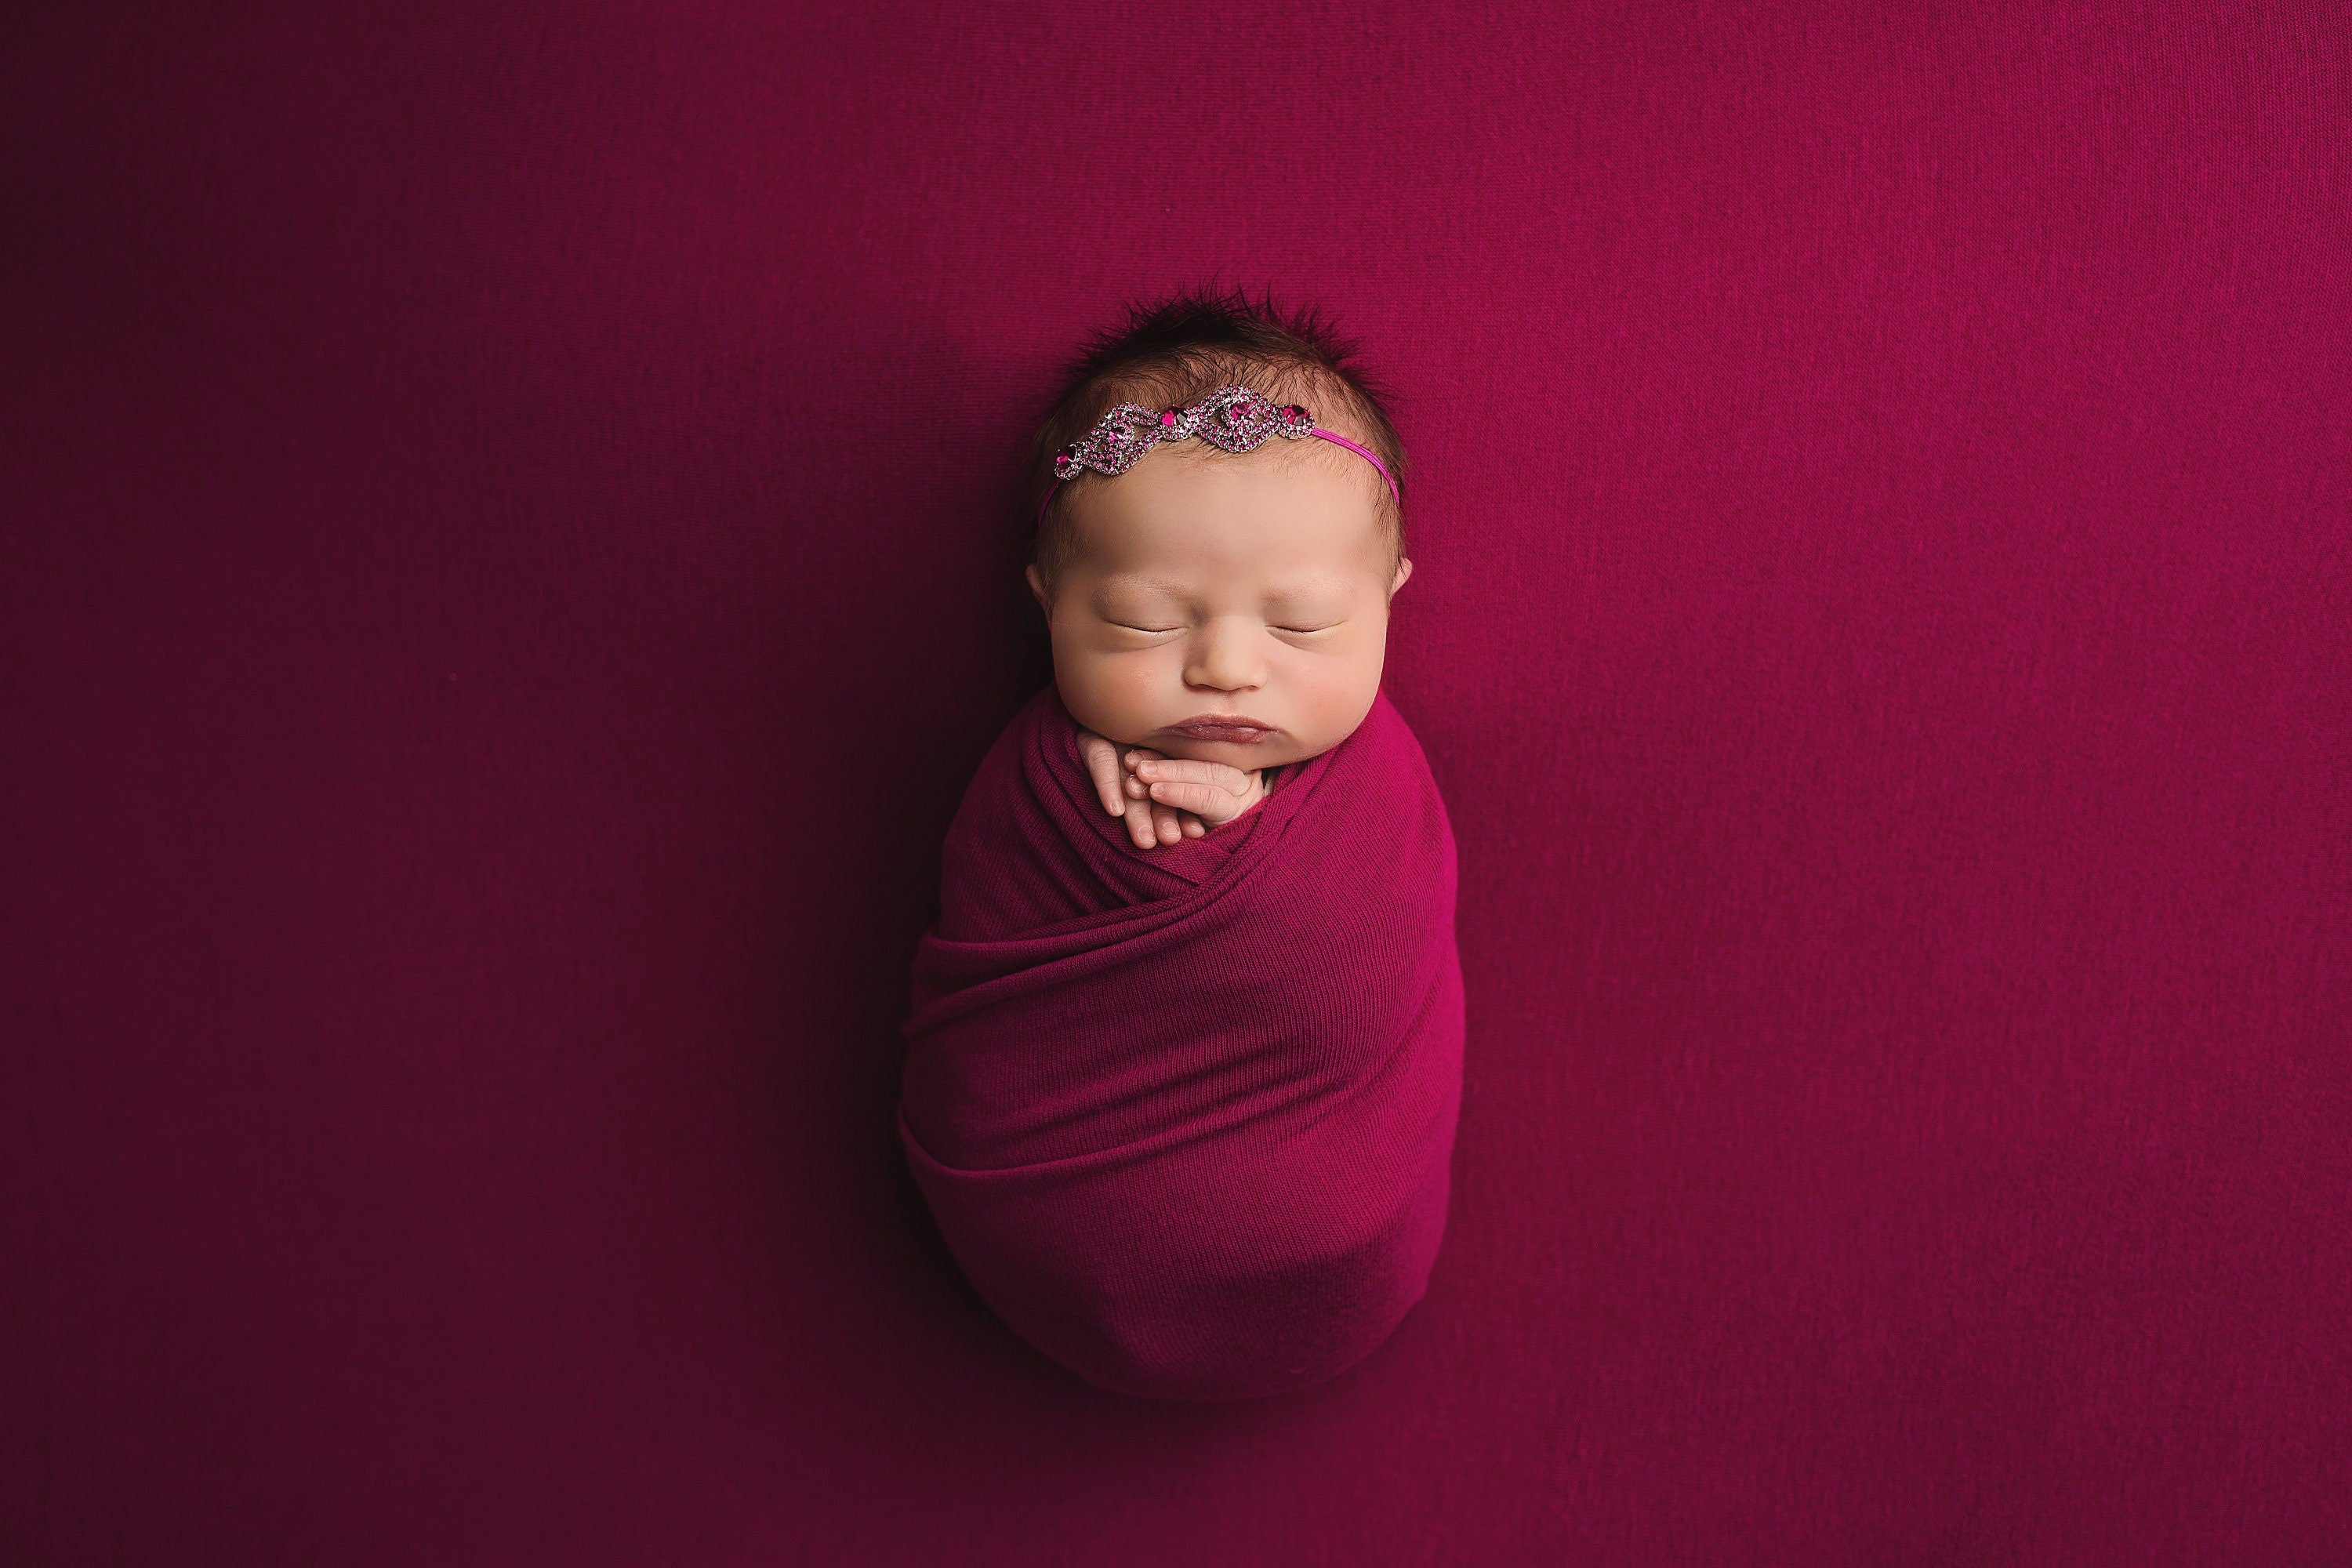 Raspberry Pink Rhinestone Headband / Rhinestone Headband / Baby Girl Headband / Crystal Headband / Newborn Photo Prop / Newborn Headband